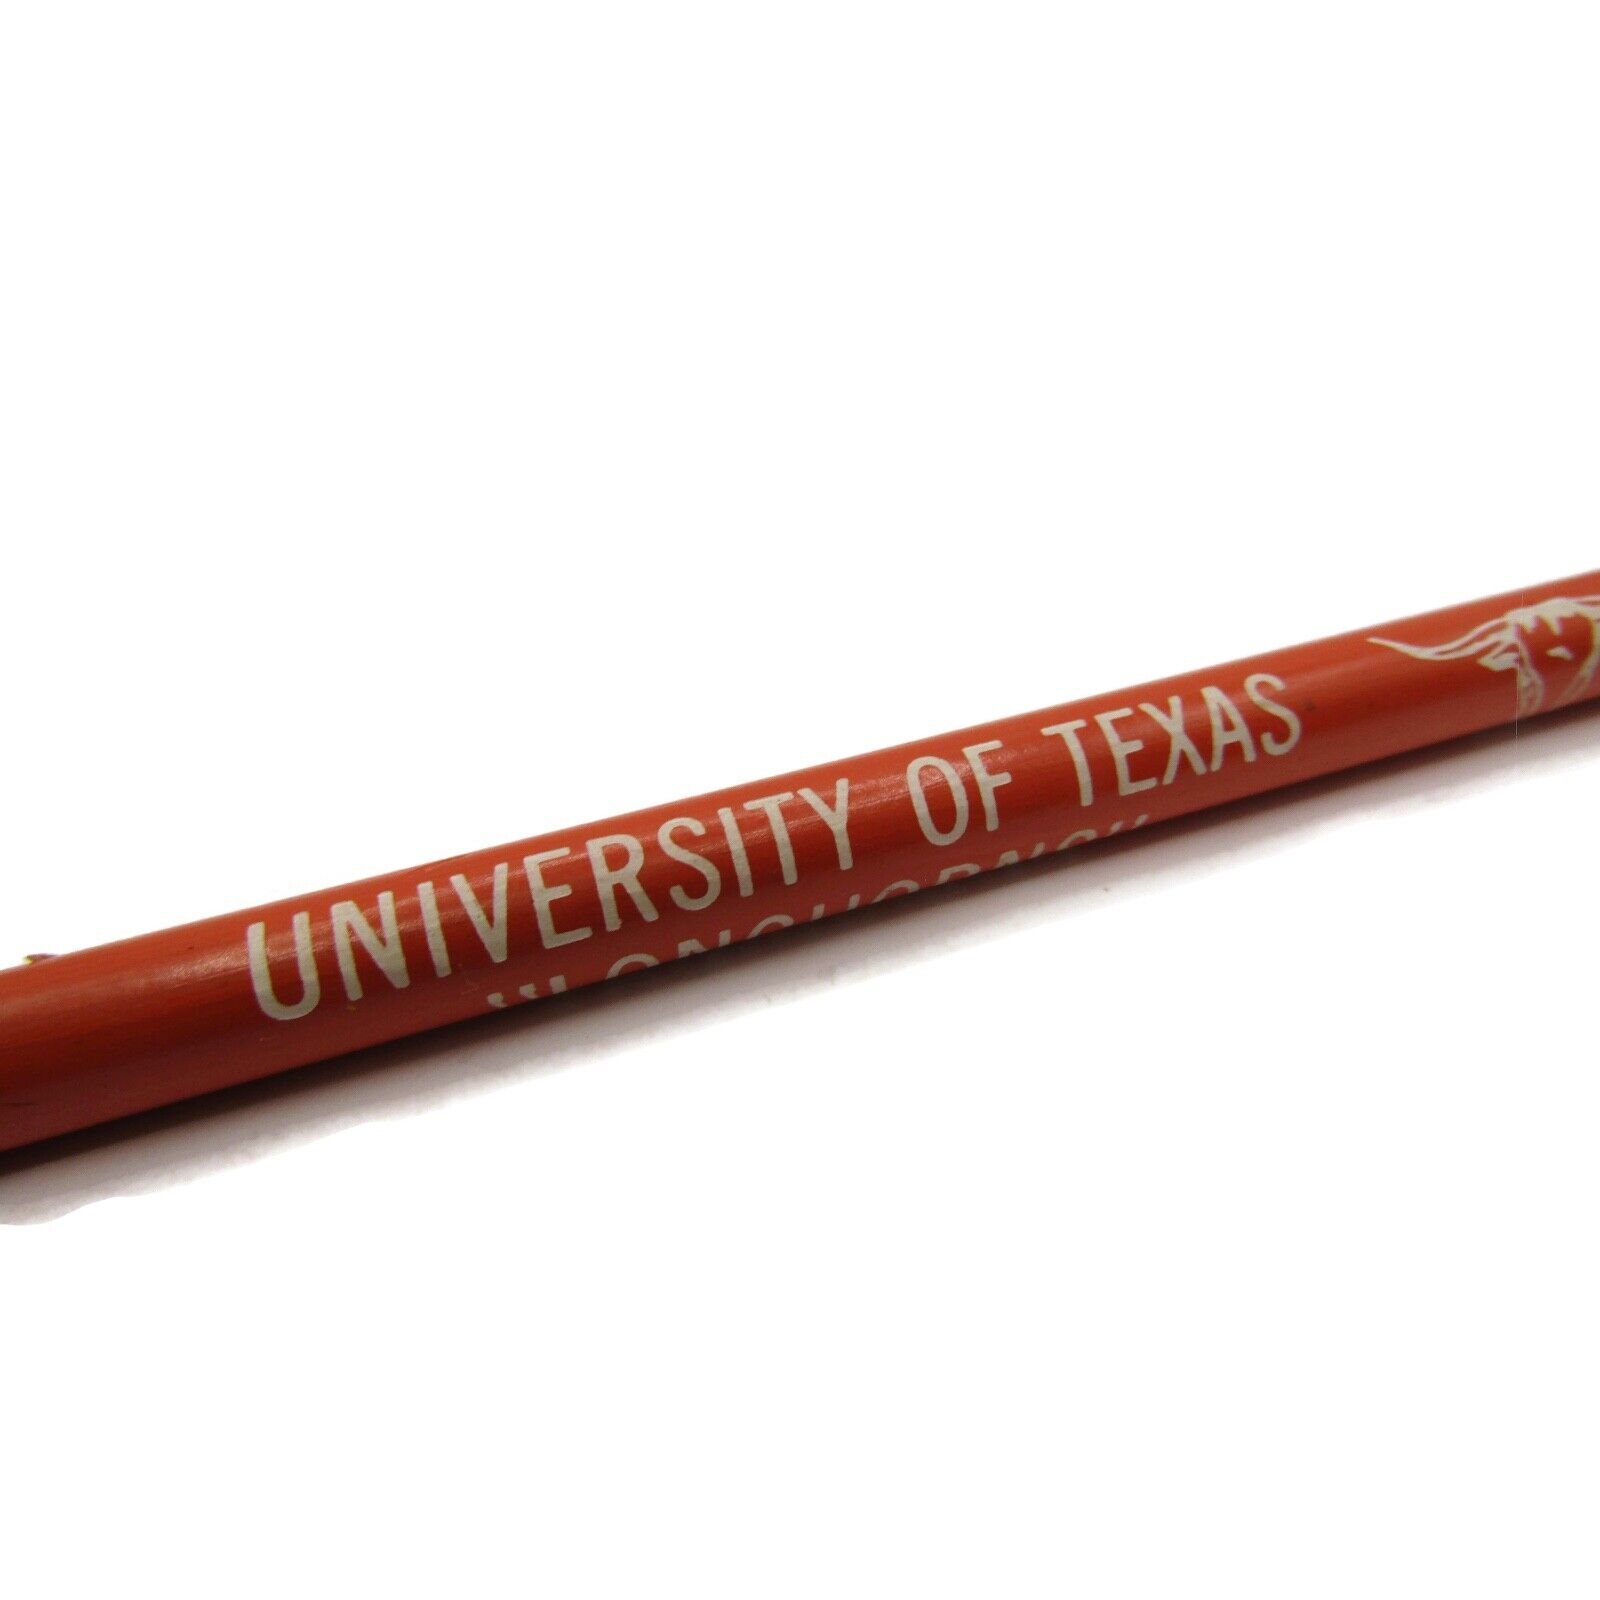 University of Texas \